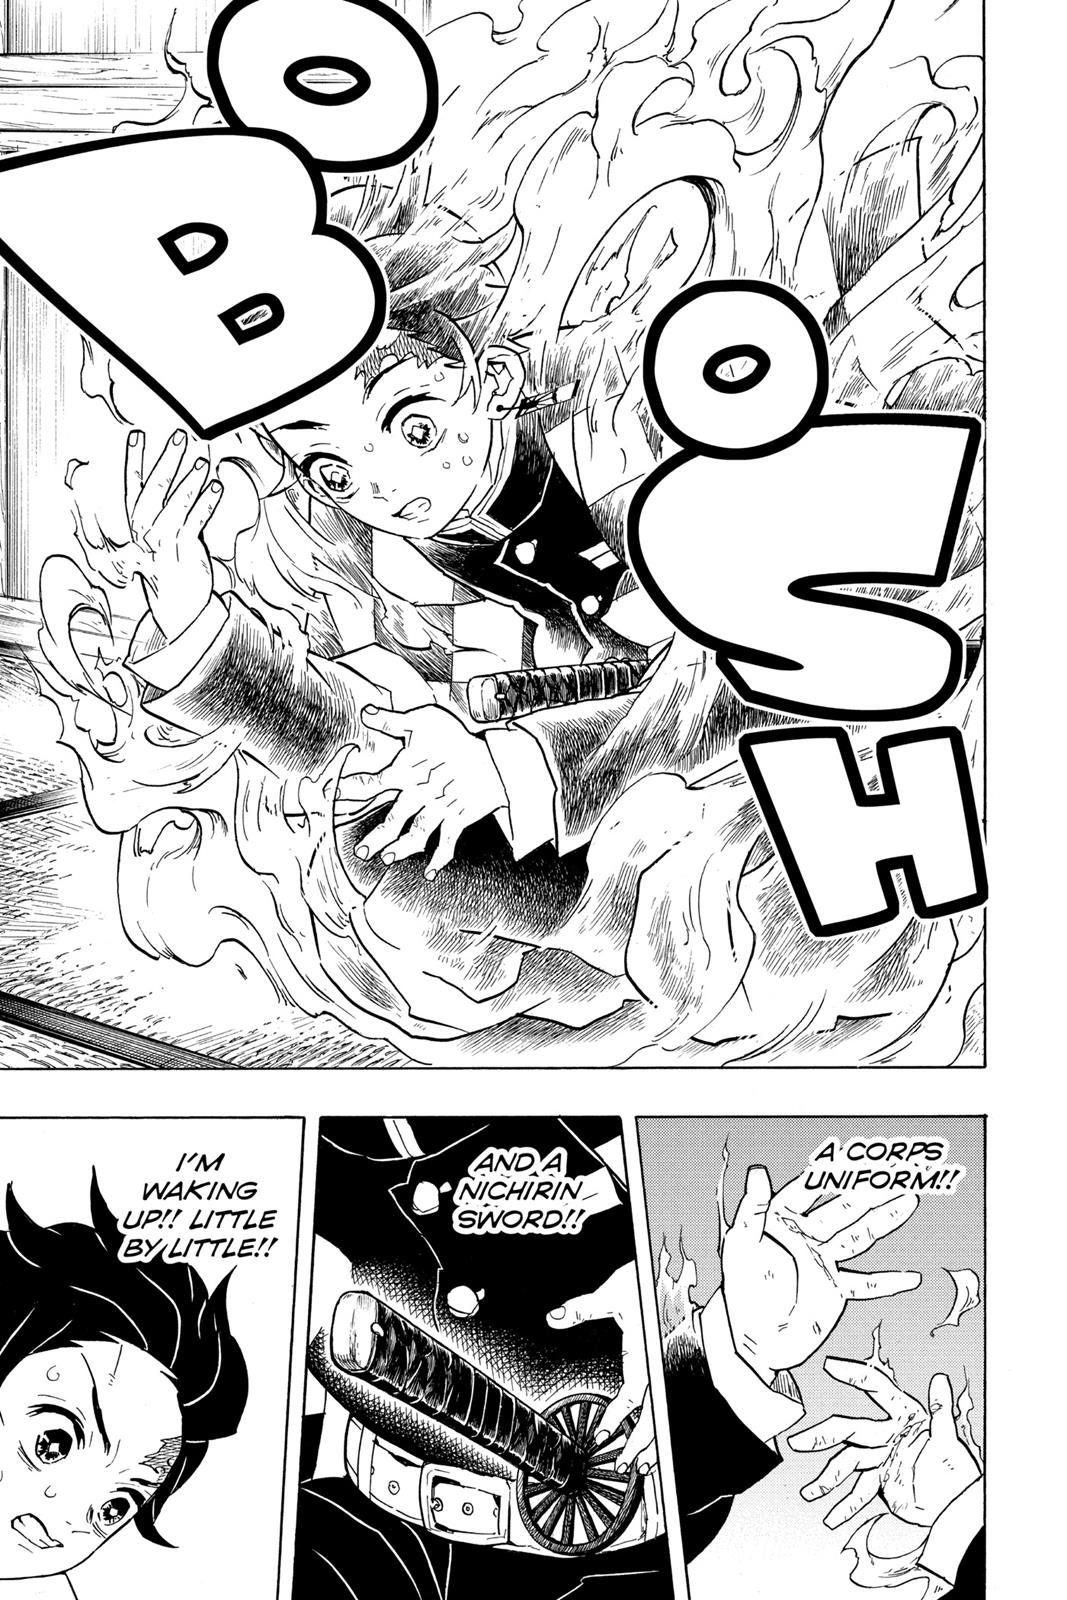 Demon Slayer Manga Manga Chapter - 57 - image 3